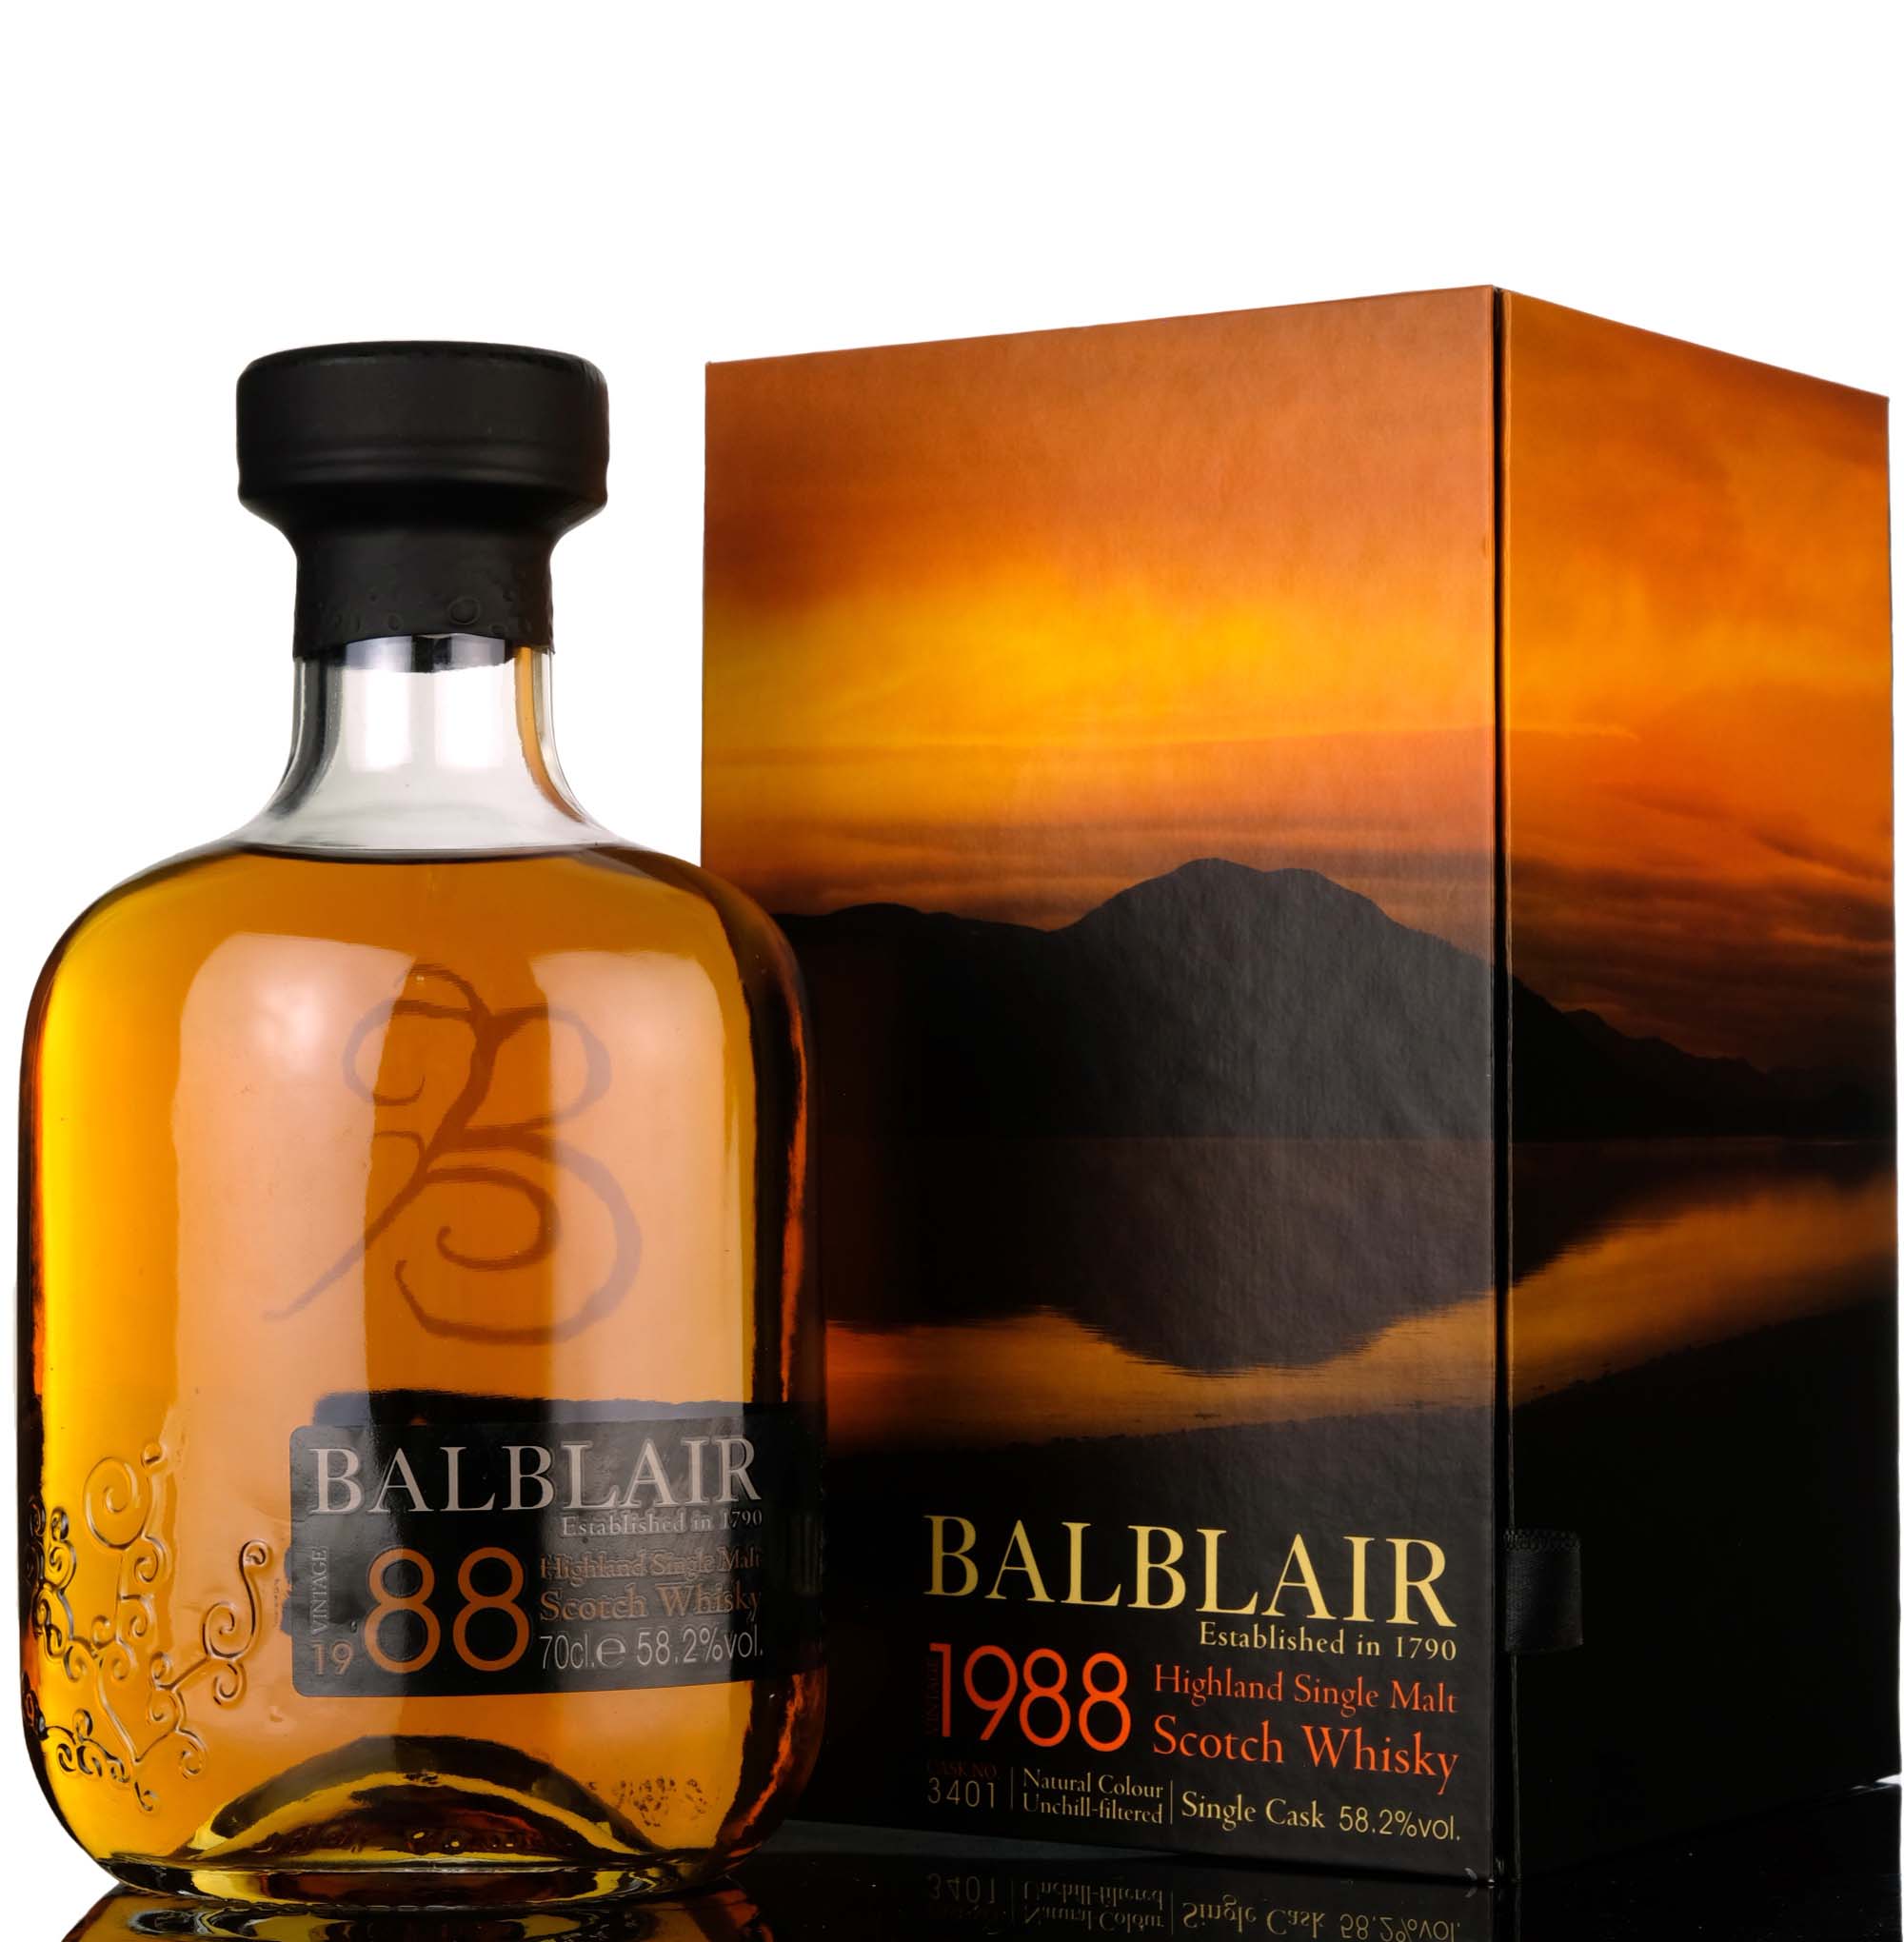 Balblair 1988-2009 - 21 Year Old - Single Cask 3401